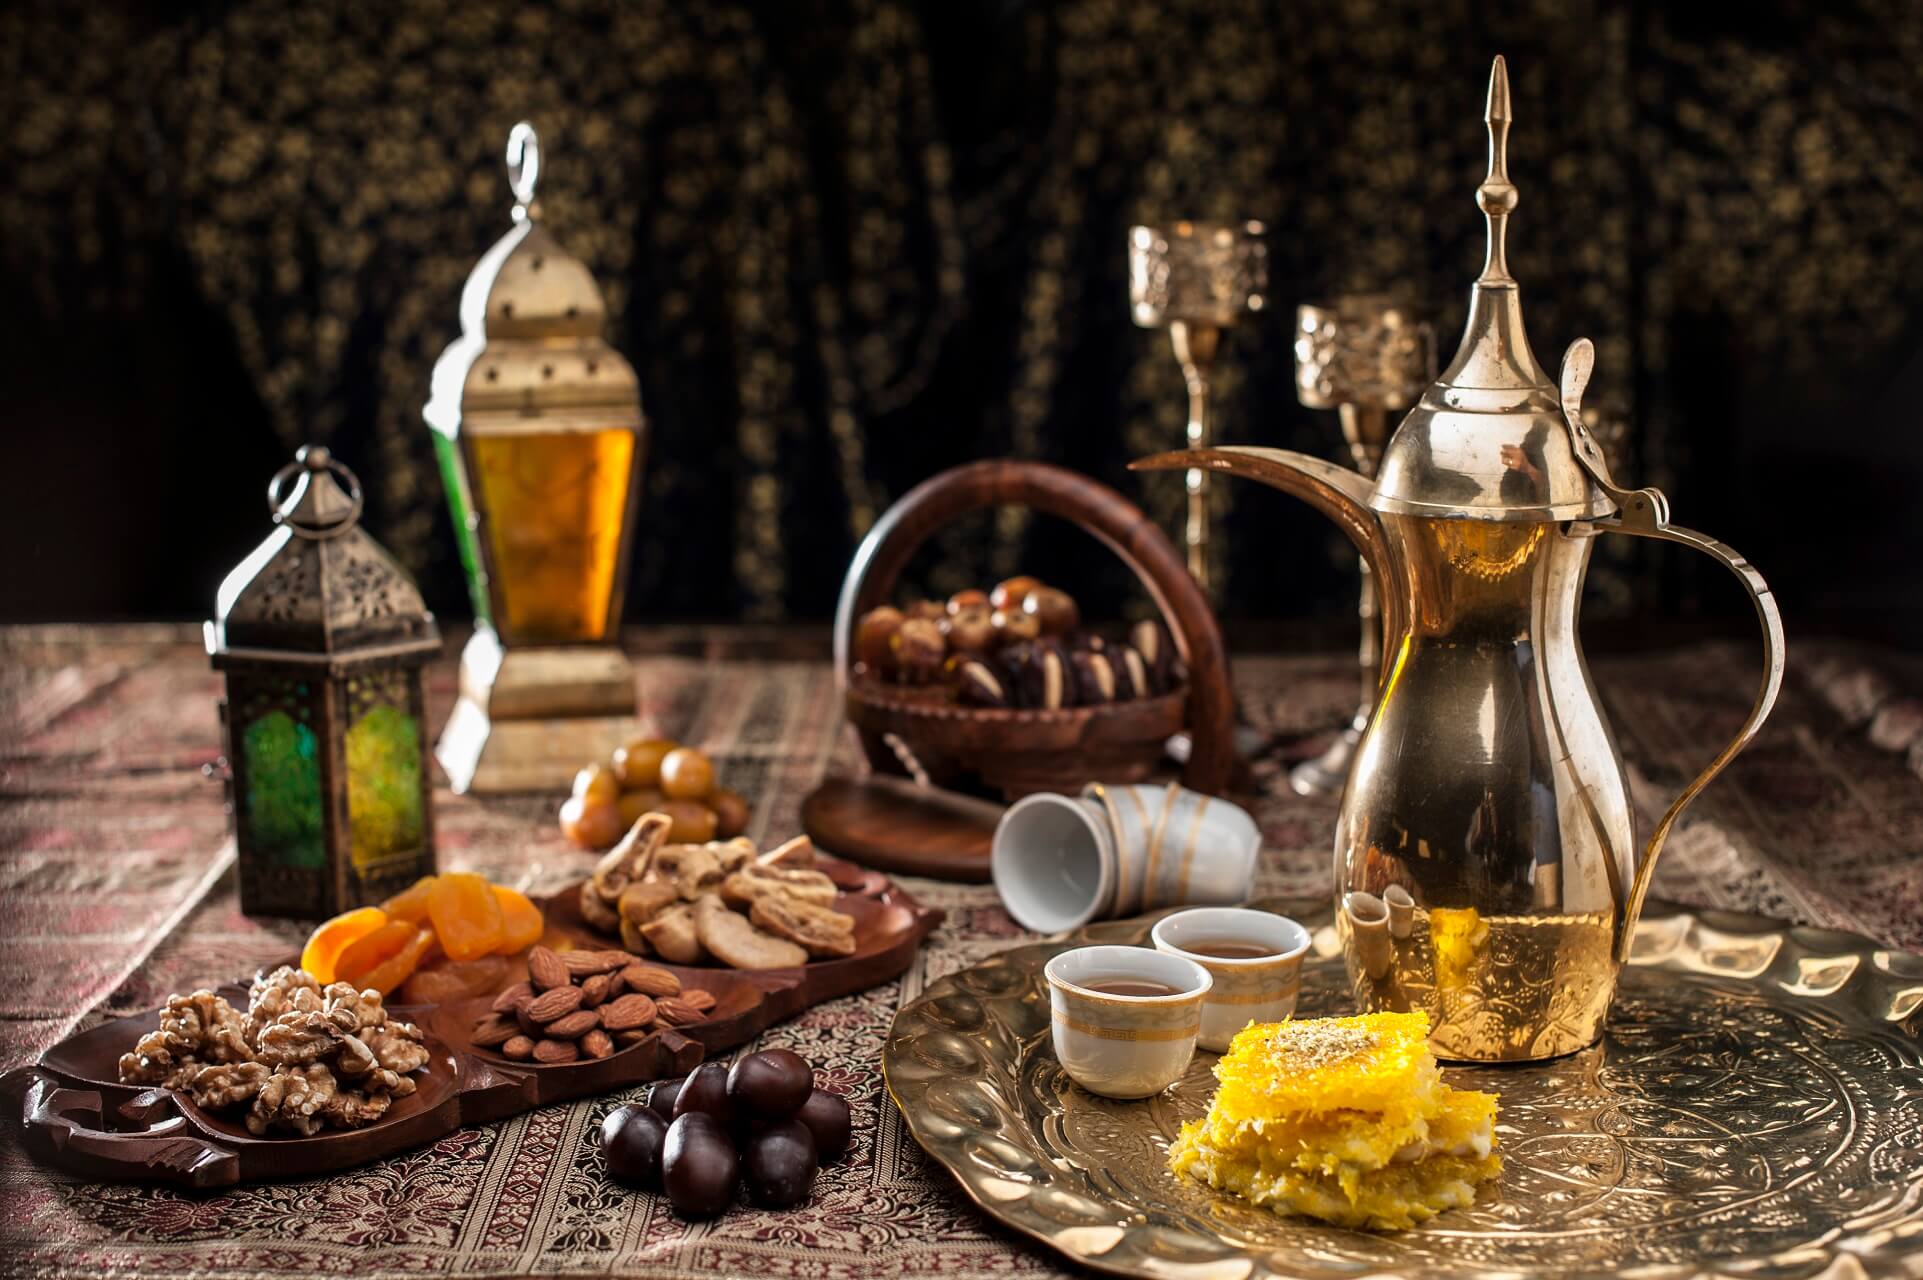 Kaffee und Tee sind in Bahrain kulinarisch ein echtes Highlight